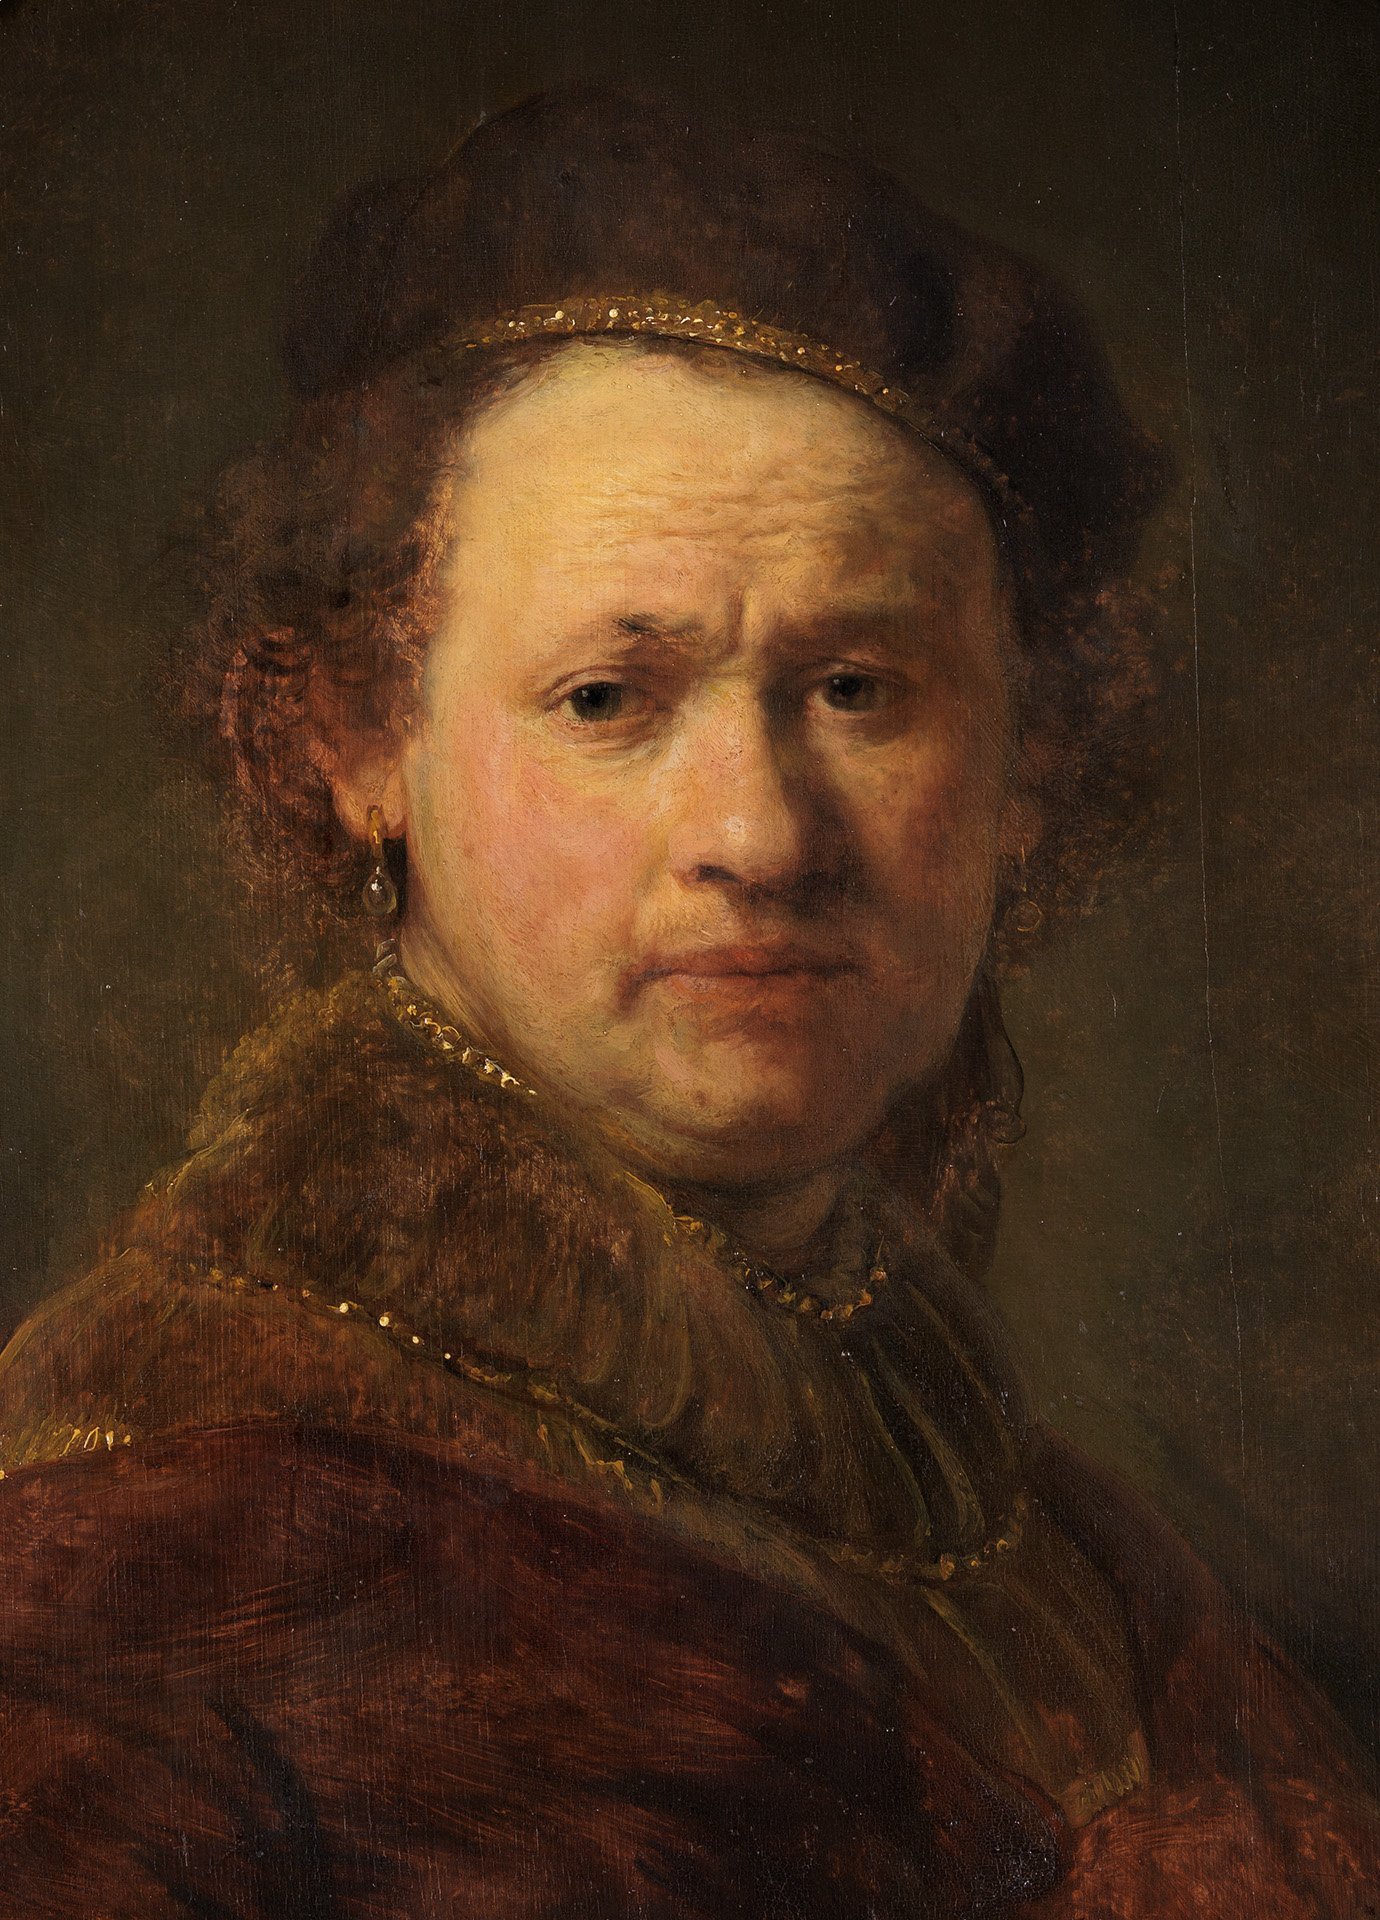 Abbildung des Selbstbildnis von Rembrandt. Er trägt einen Hut und einen braunen Umhang. Die Farbe braun bestimmt das Portrait.